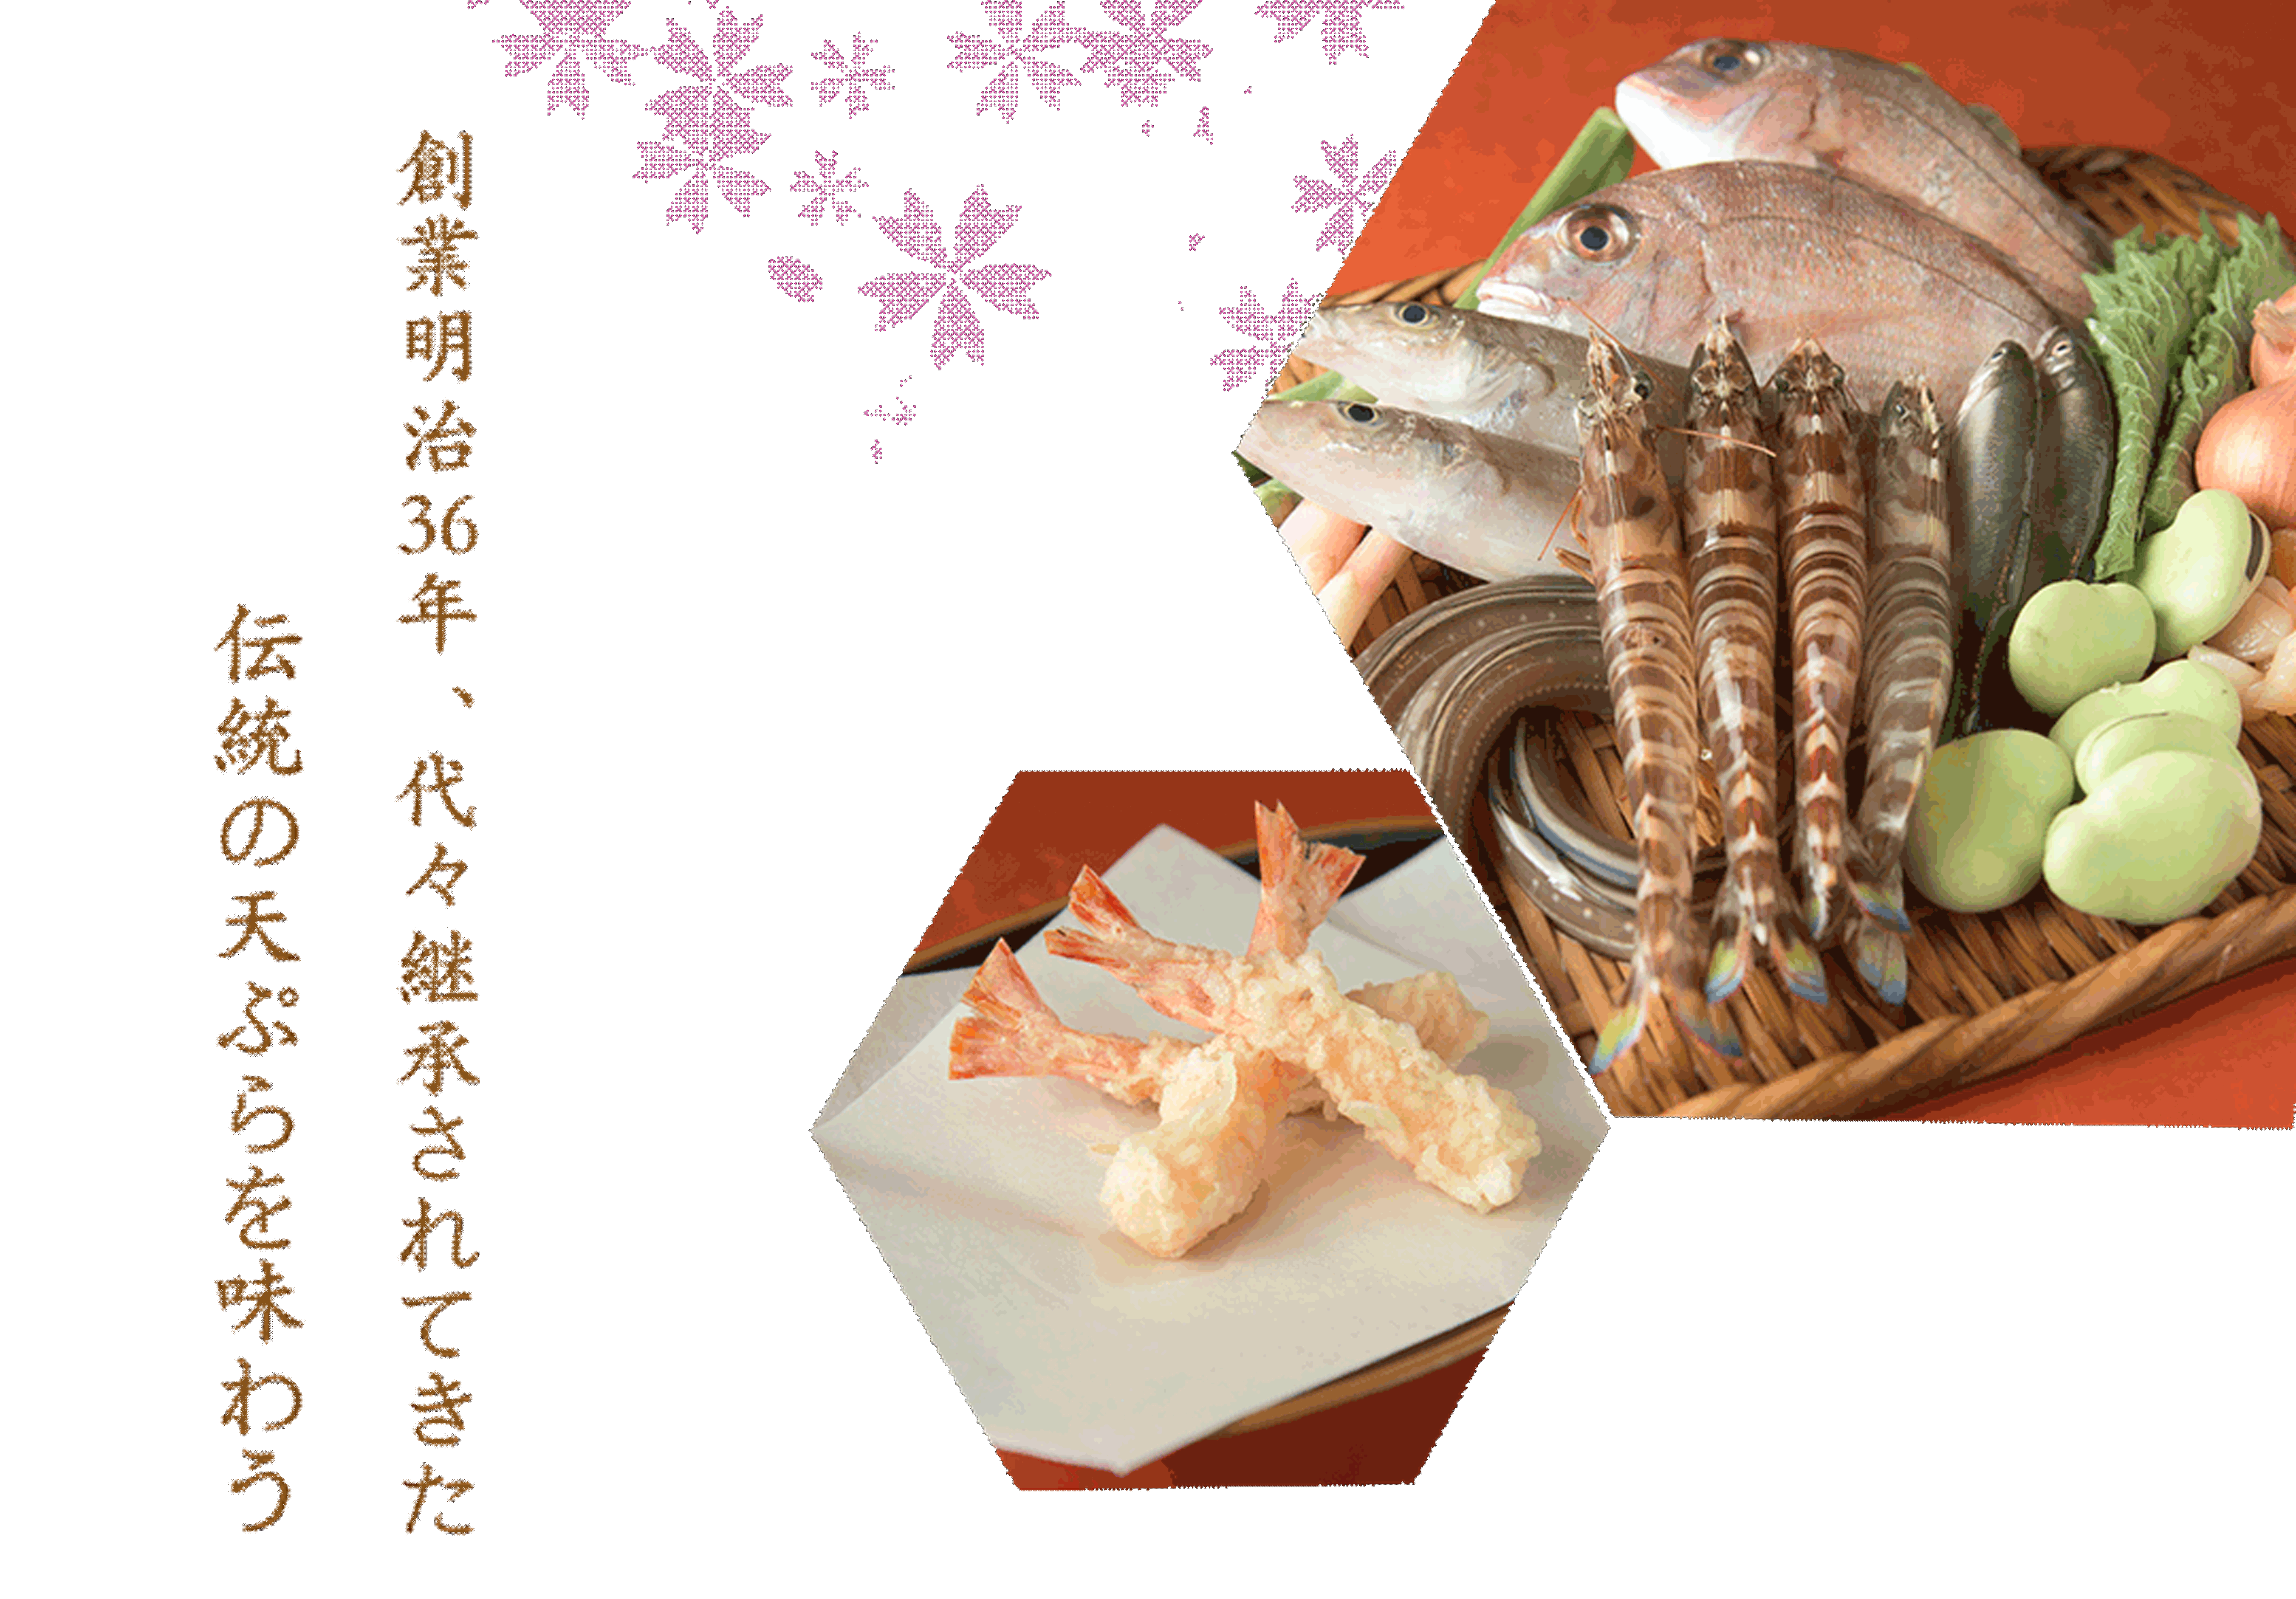 創業明治36年、代々継承されてきた伝統の天ぷらを味わう